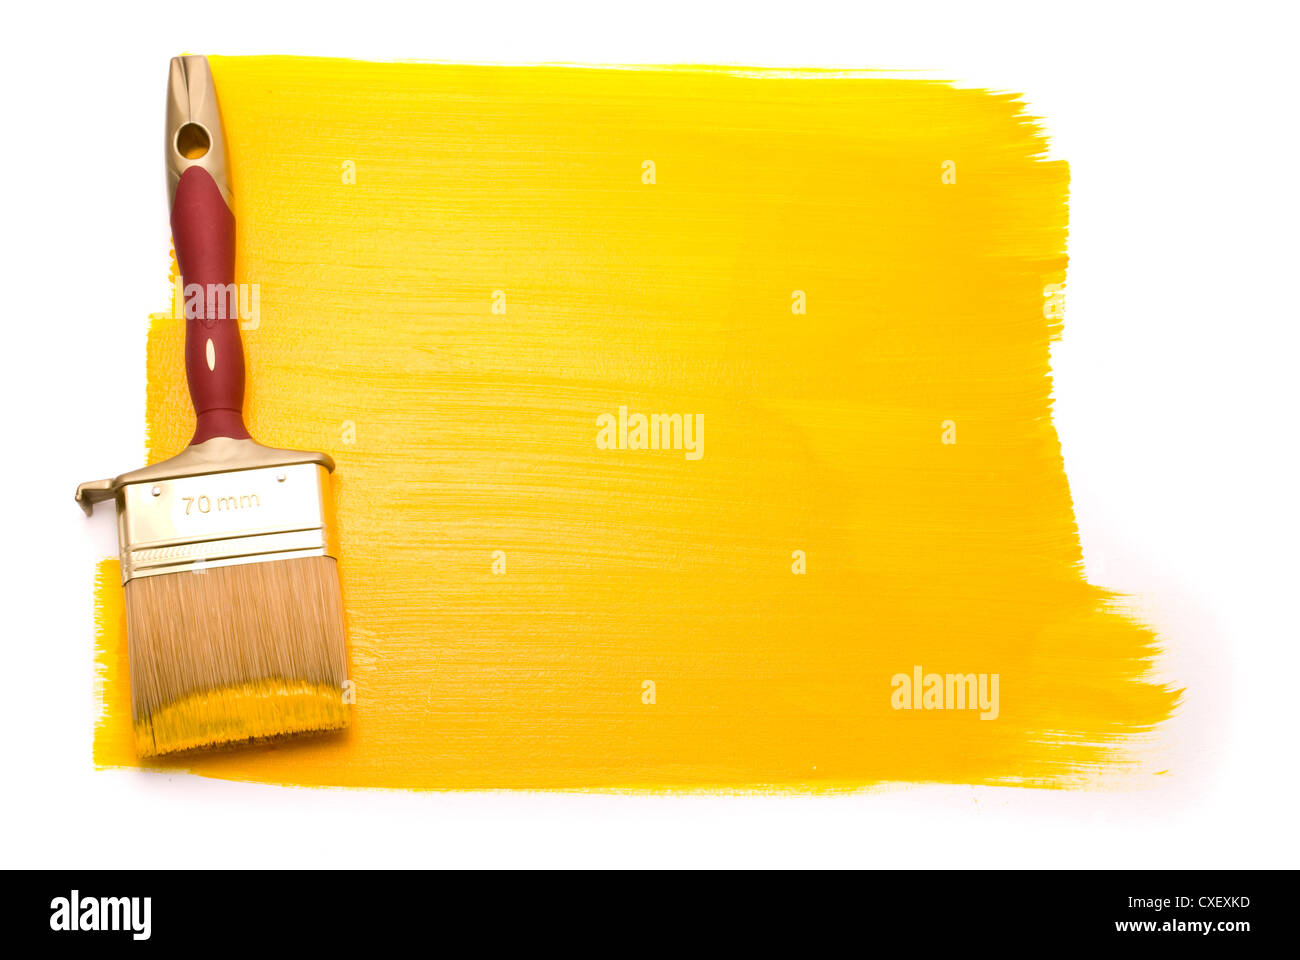 Spazzola professionale con vernice di colore giallo su sfondo bianco Foto Stock